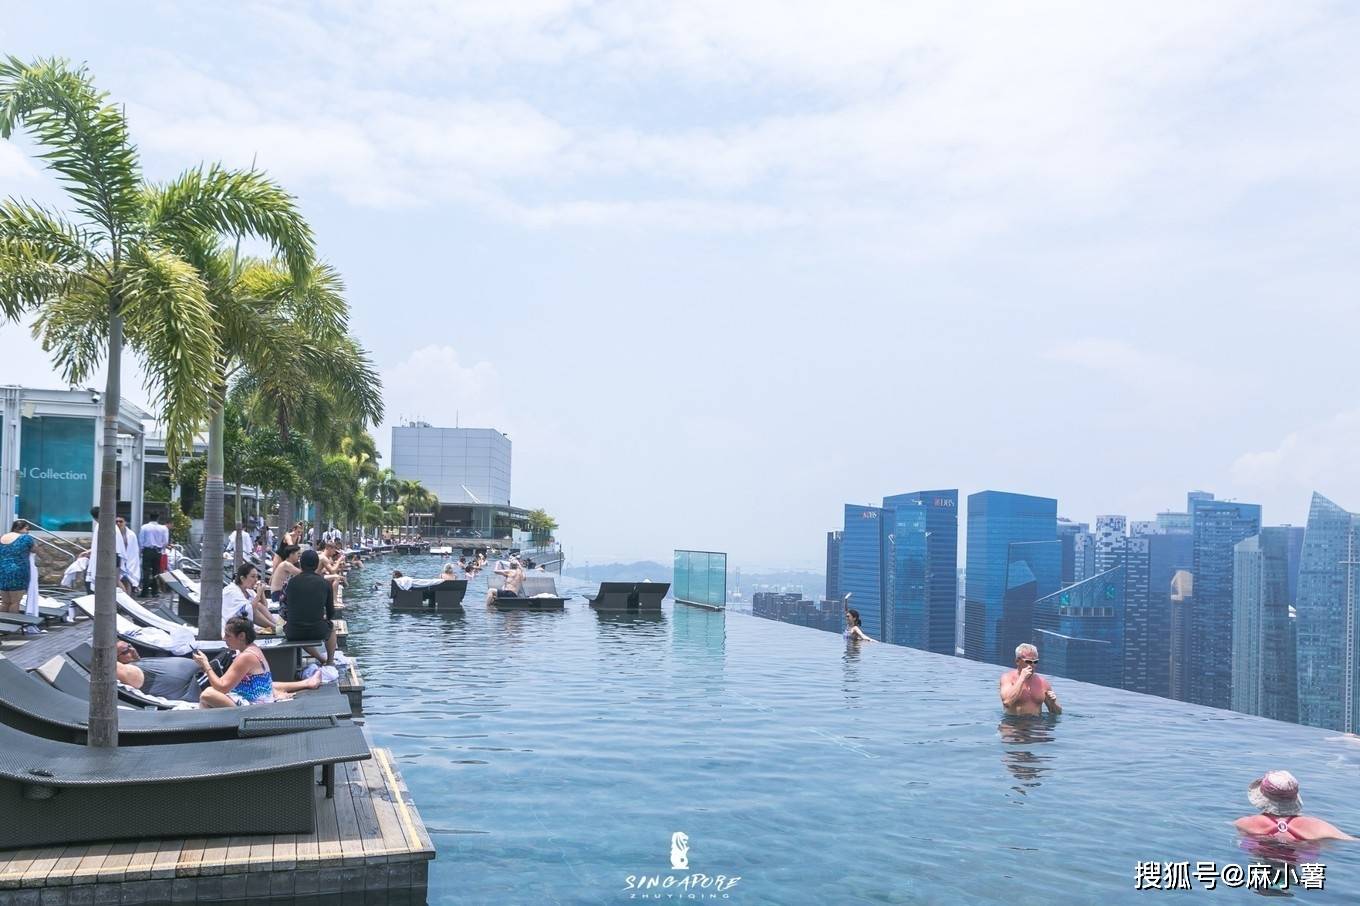 新加坡滨海湾金沙酒店无边泳池攻略,新加坡滨海湾金沙酒店无边泳池门票/游玩攻略/地址/图片/门票价格【携程攻略】